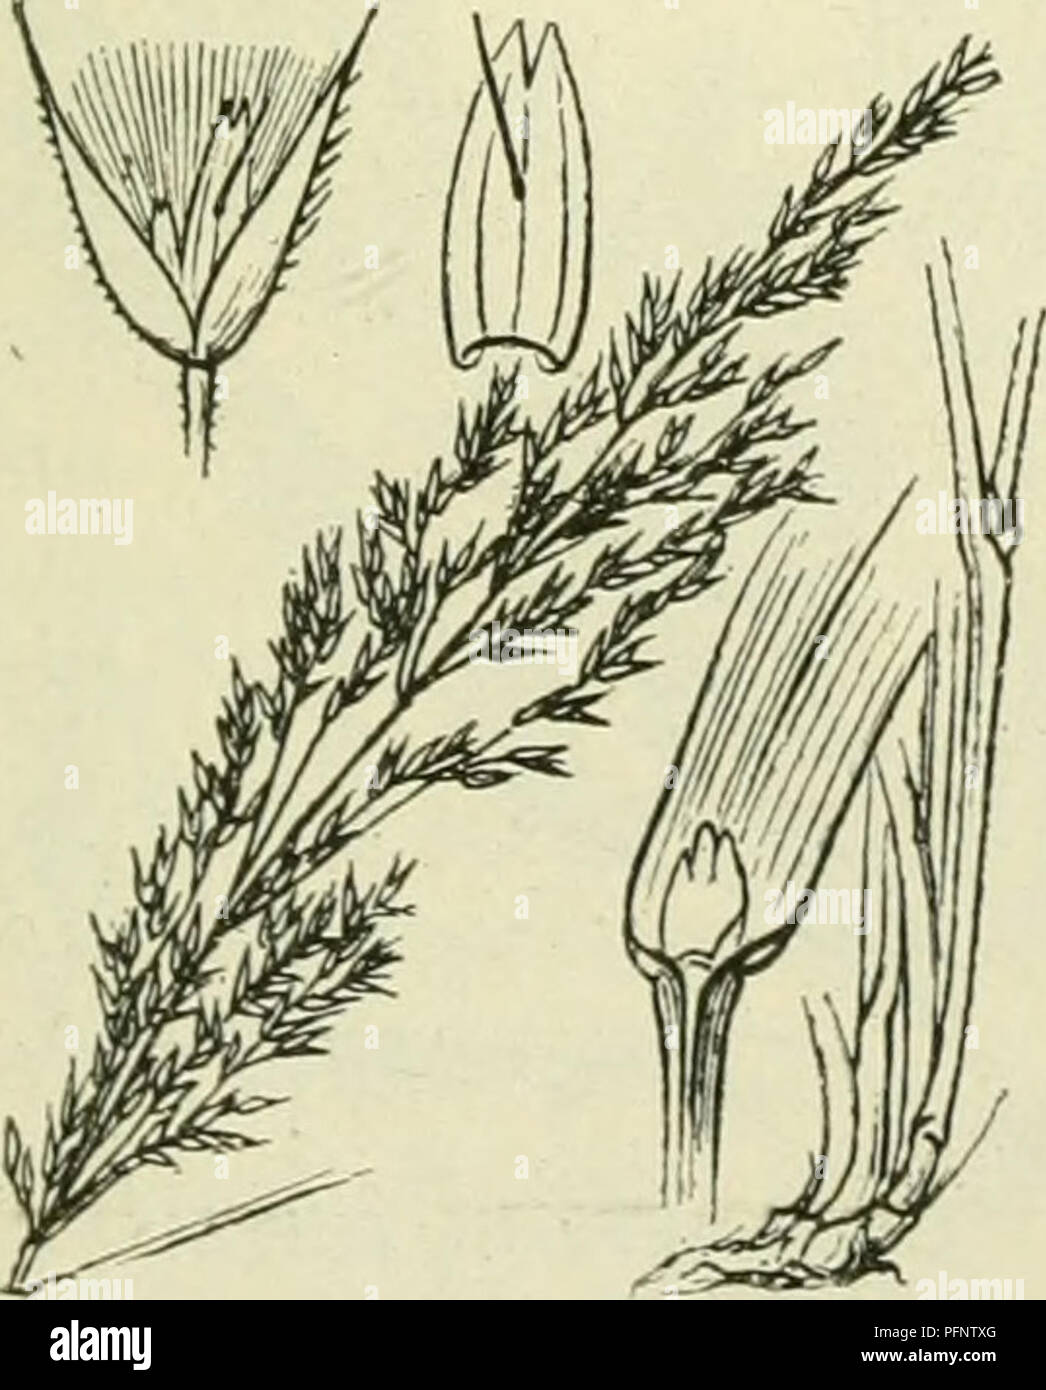 . De flora van Nederland. Plants. Calamagrostis lanceolata Fig. 404. De kelkkafjes (fig. 404) C. lanceolata ') Rth. (C. CalaiiiagrÃ³stis Karst.). I^ 1 u i in riet (fig. 404). Deze plant heeft een kruipenden wortelstok met vrij dunne uitloopers en vormt kleine zoden. De stengel is rechtopstaand, iets slap, beneden glad, boven (boven het bovenste blad beginnend) ruw, vaak vertakt. De bladen hebben een gladde of iets ruwe, aan de onderste soms boven zacht be- haarde scheede en een vrij smalle (tot 5 mM breede), soms (vooral aan de zijloten) borstelvor- mig samengevouwen, boven zeer ruwe, meest ta Stock Photo